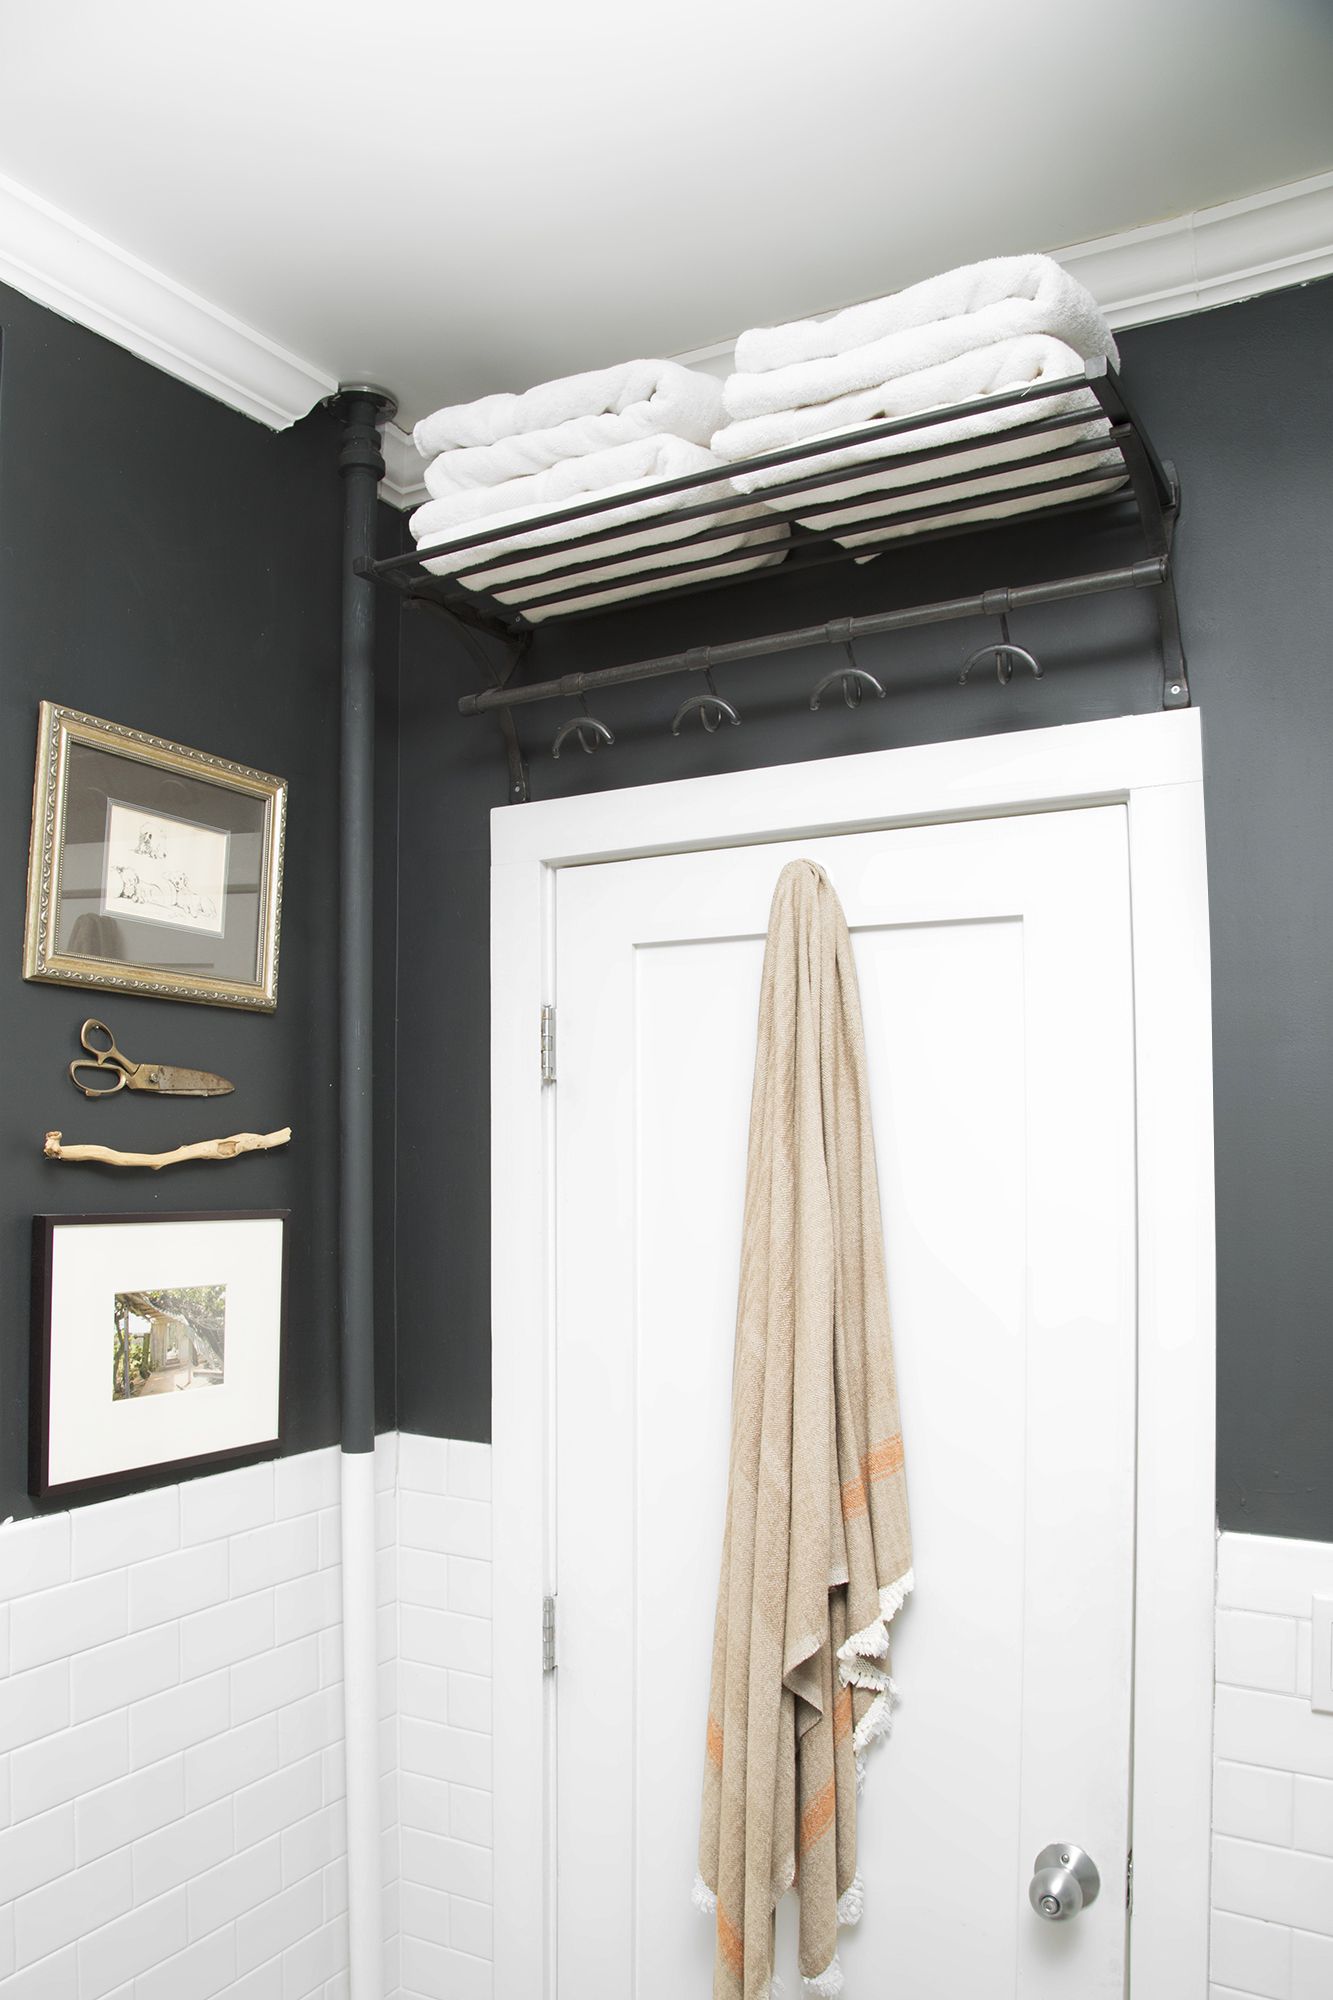 24 Small Bathroom Storage Ideas Wall, Bathroom Shelf Ideas For Towels